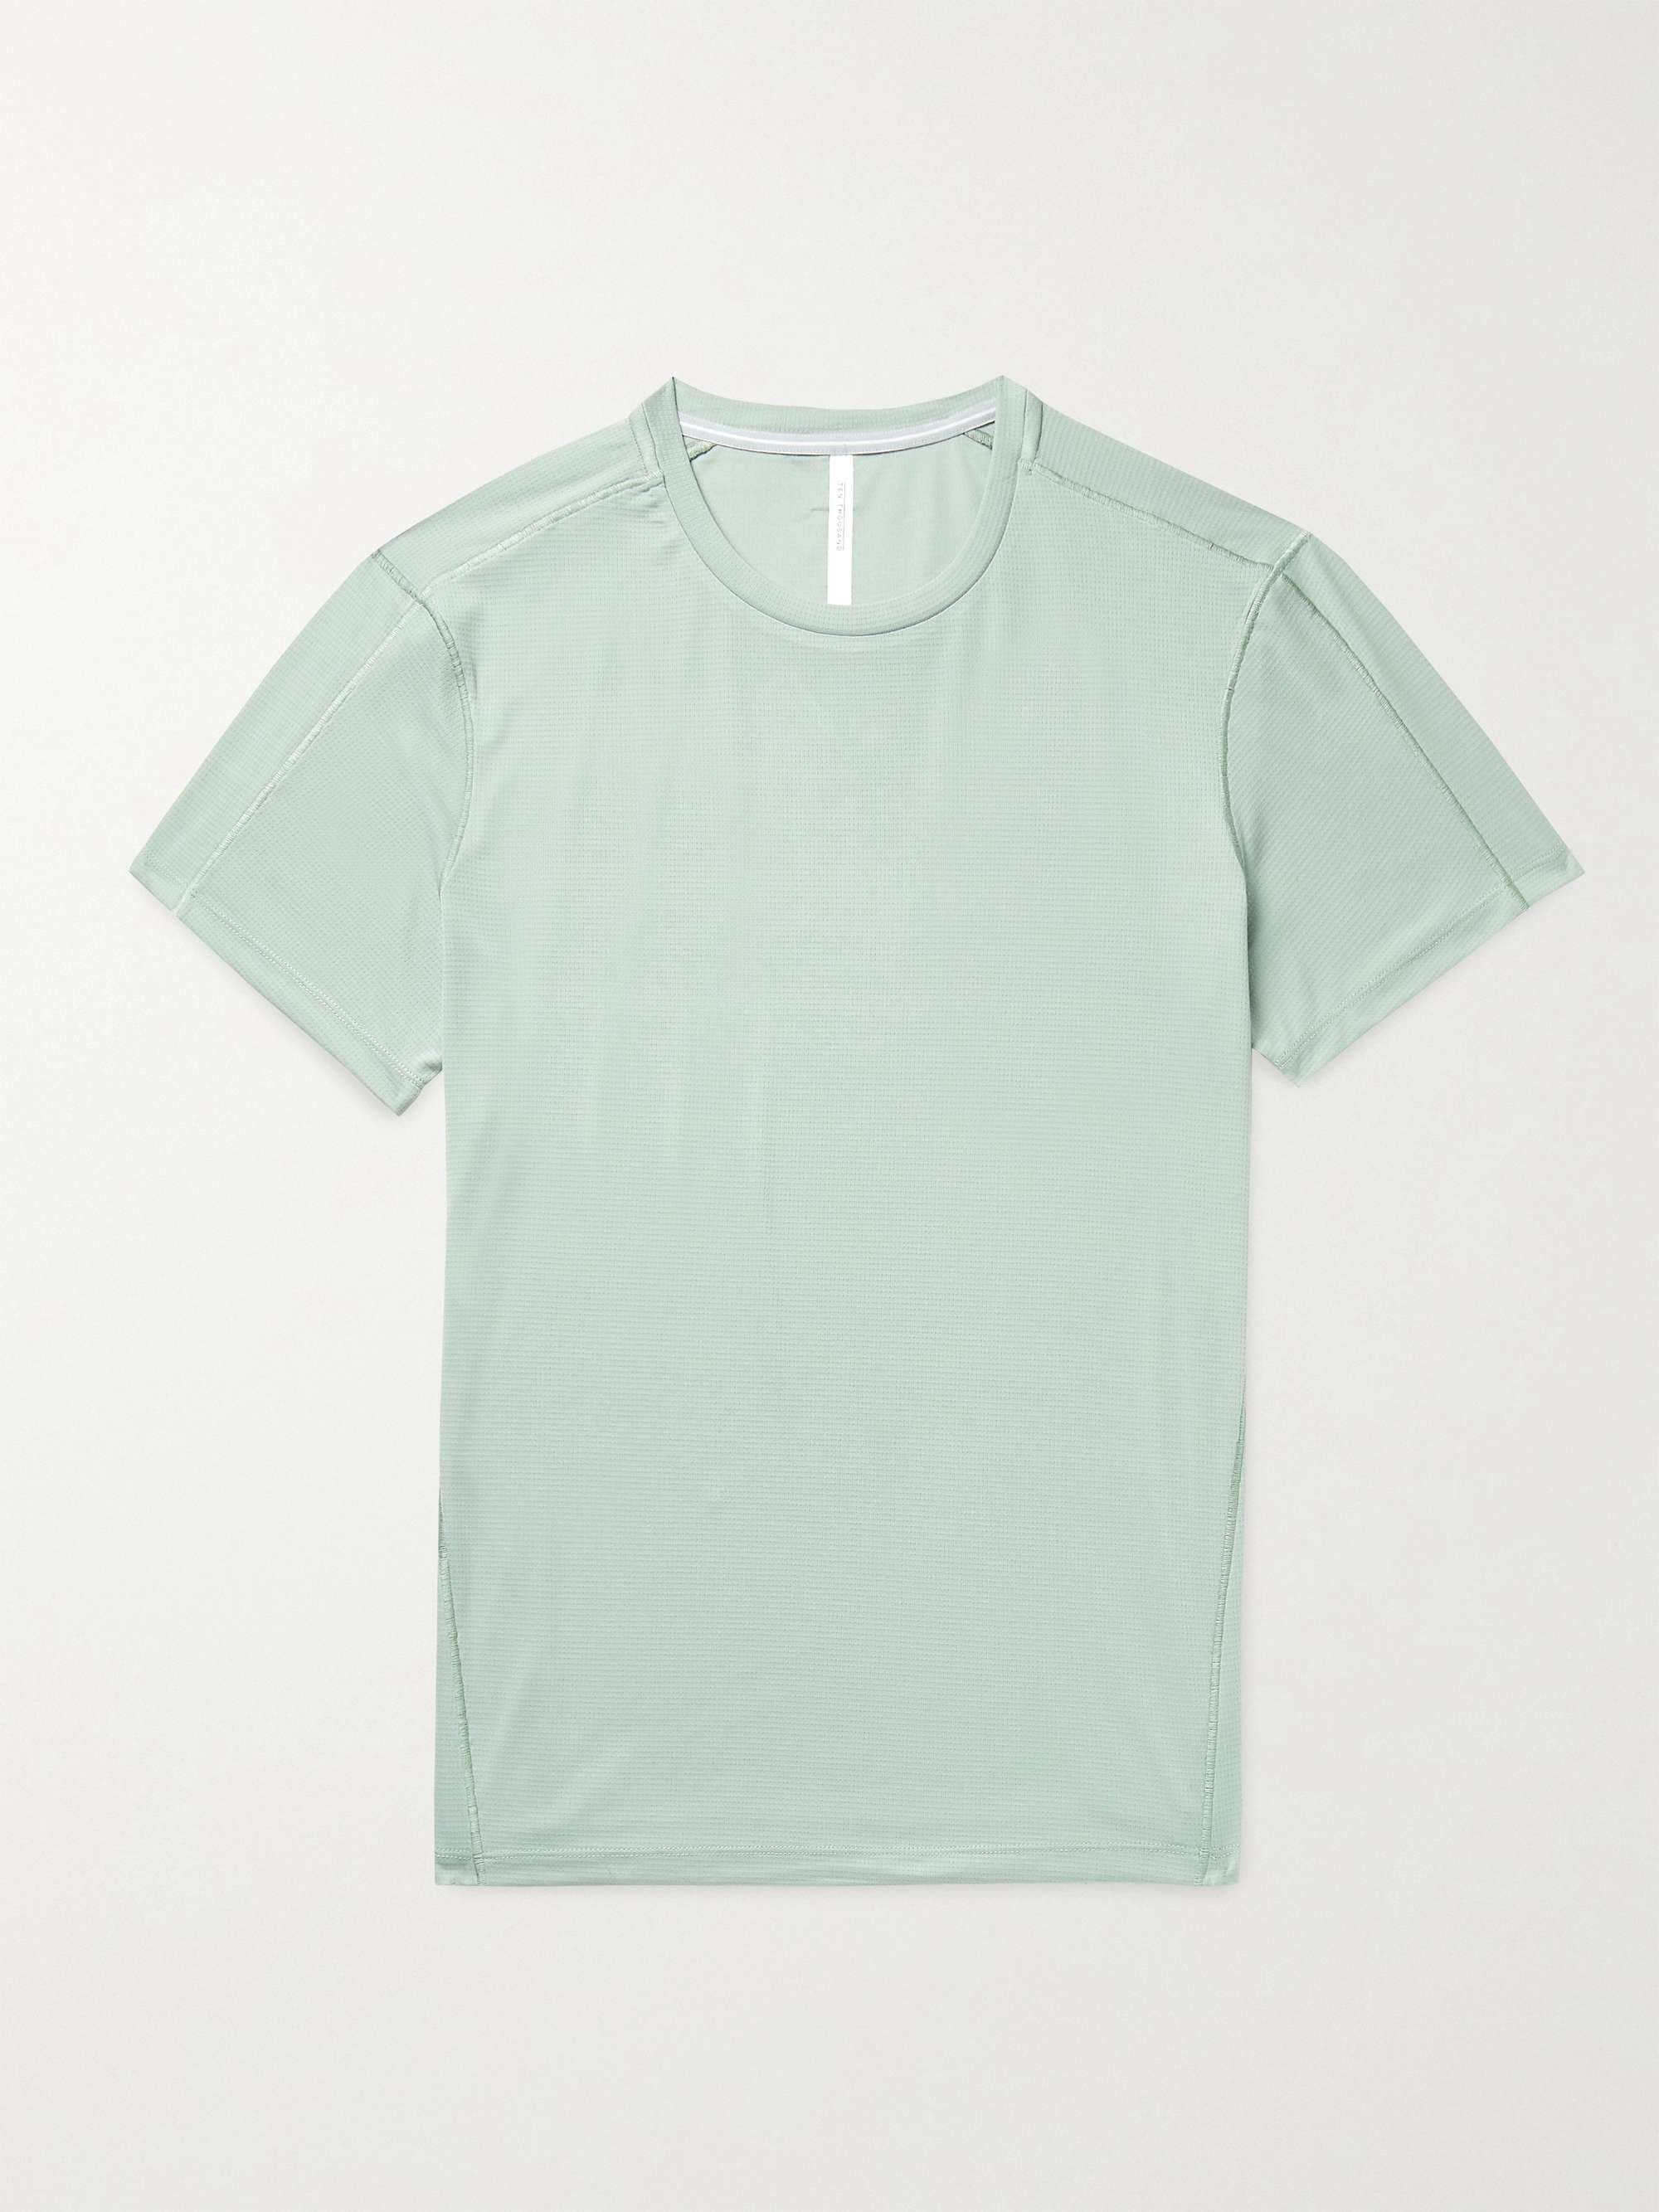 TEN THOUSAND Lightweight Stretch-Mesh T-Shirt